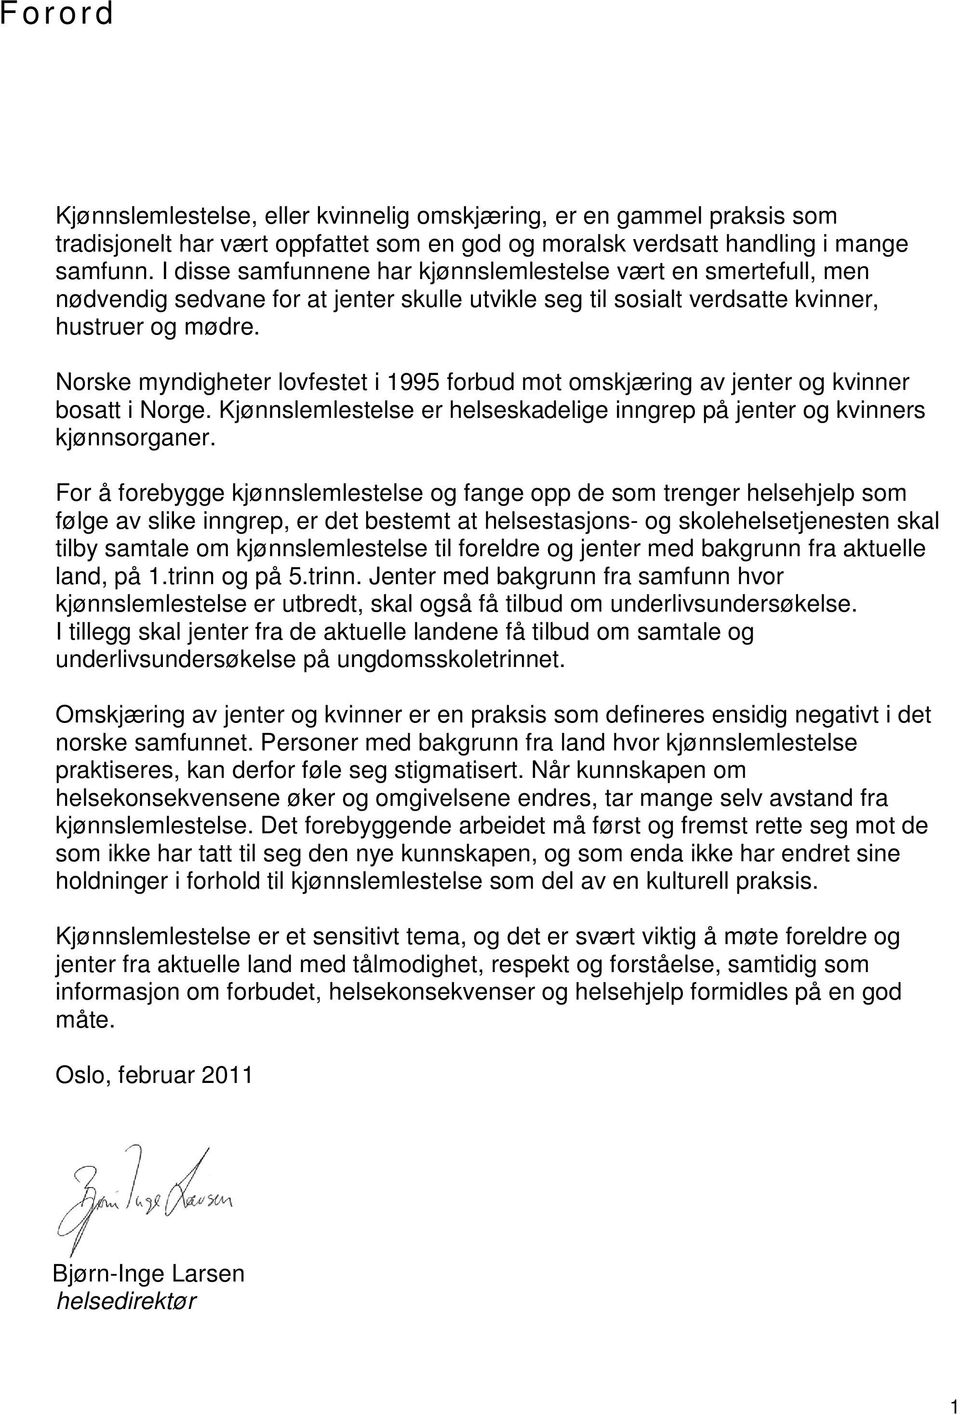 Norske myndigheter lovfestet i 1995 forbud mot omskjæring av jenter og kvinner bosatt i Norge. Kjønnslemlestelse er helseskadelige inngrep på jenter og kvinners kjønnsorganer.